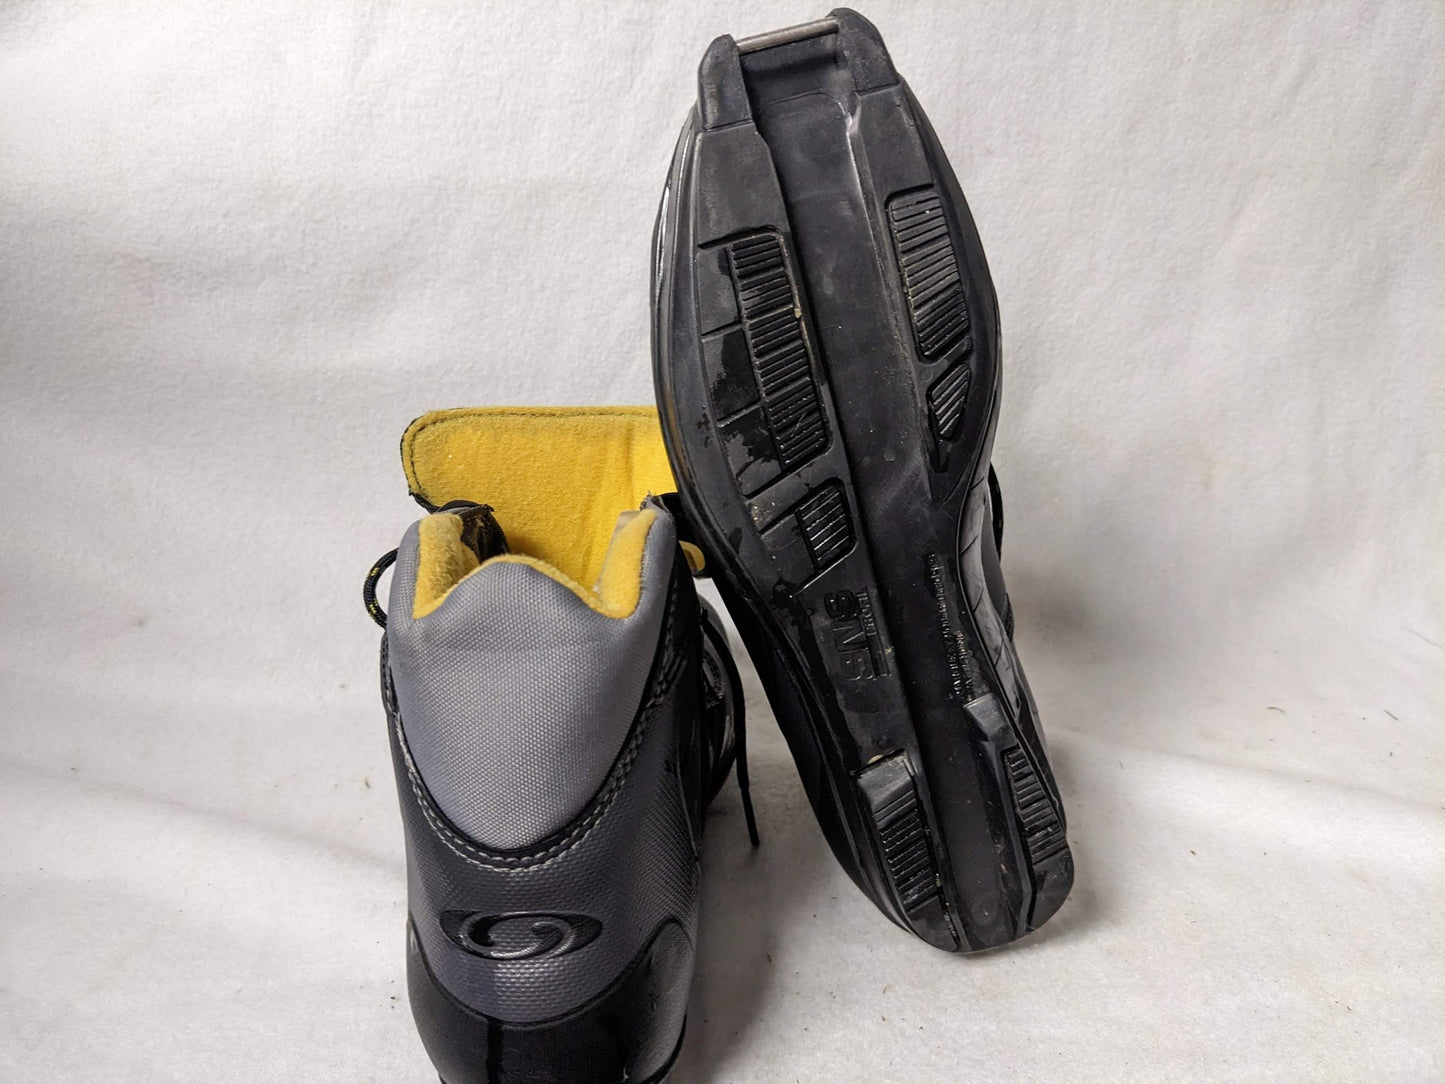 Salomon e3 SNS XC Cross Country Profil Ski Boots Size 24 Color Black Condition Used